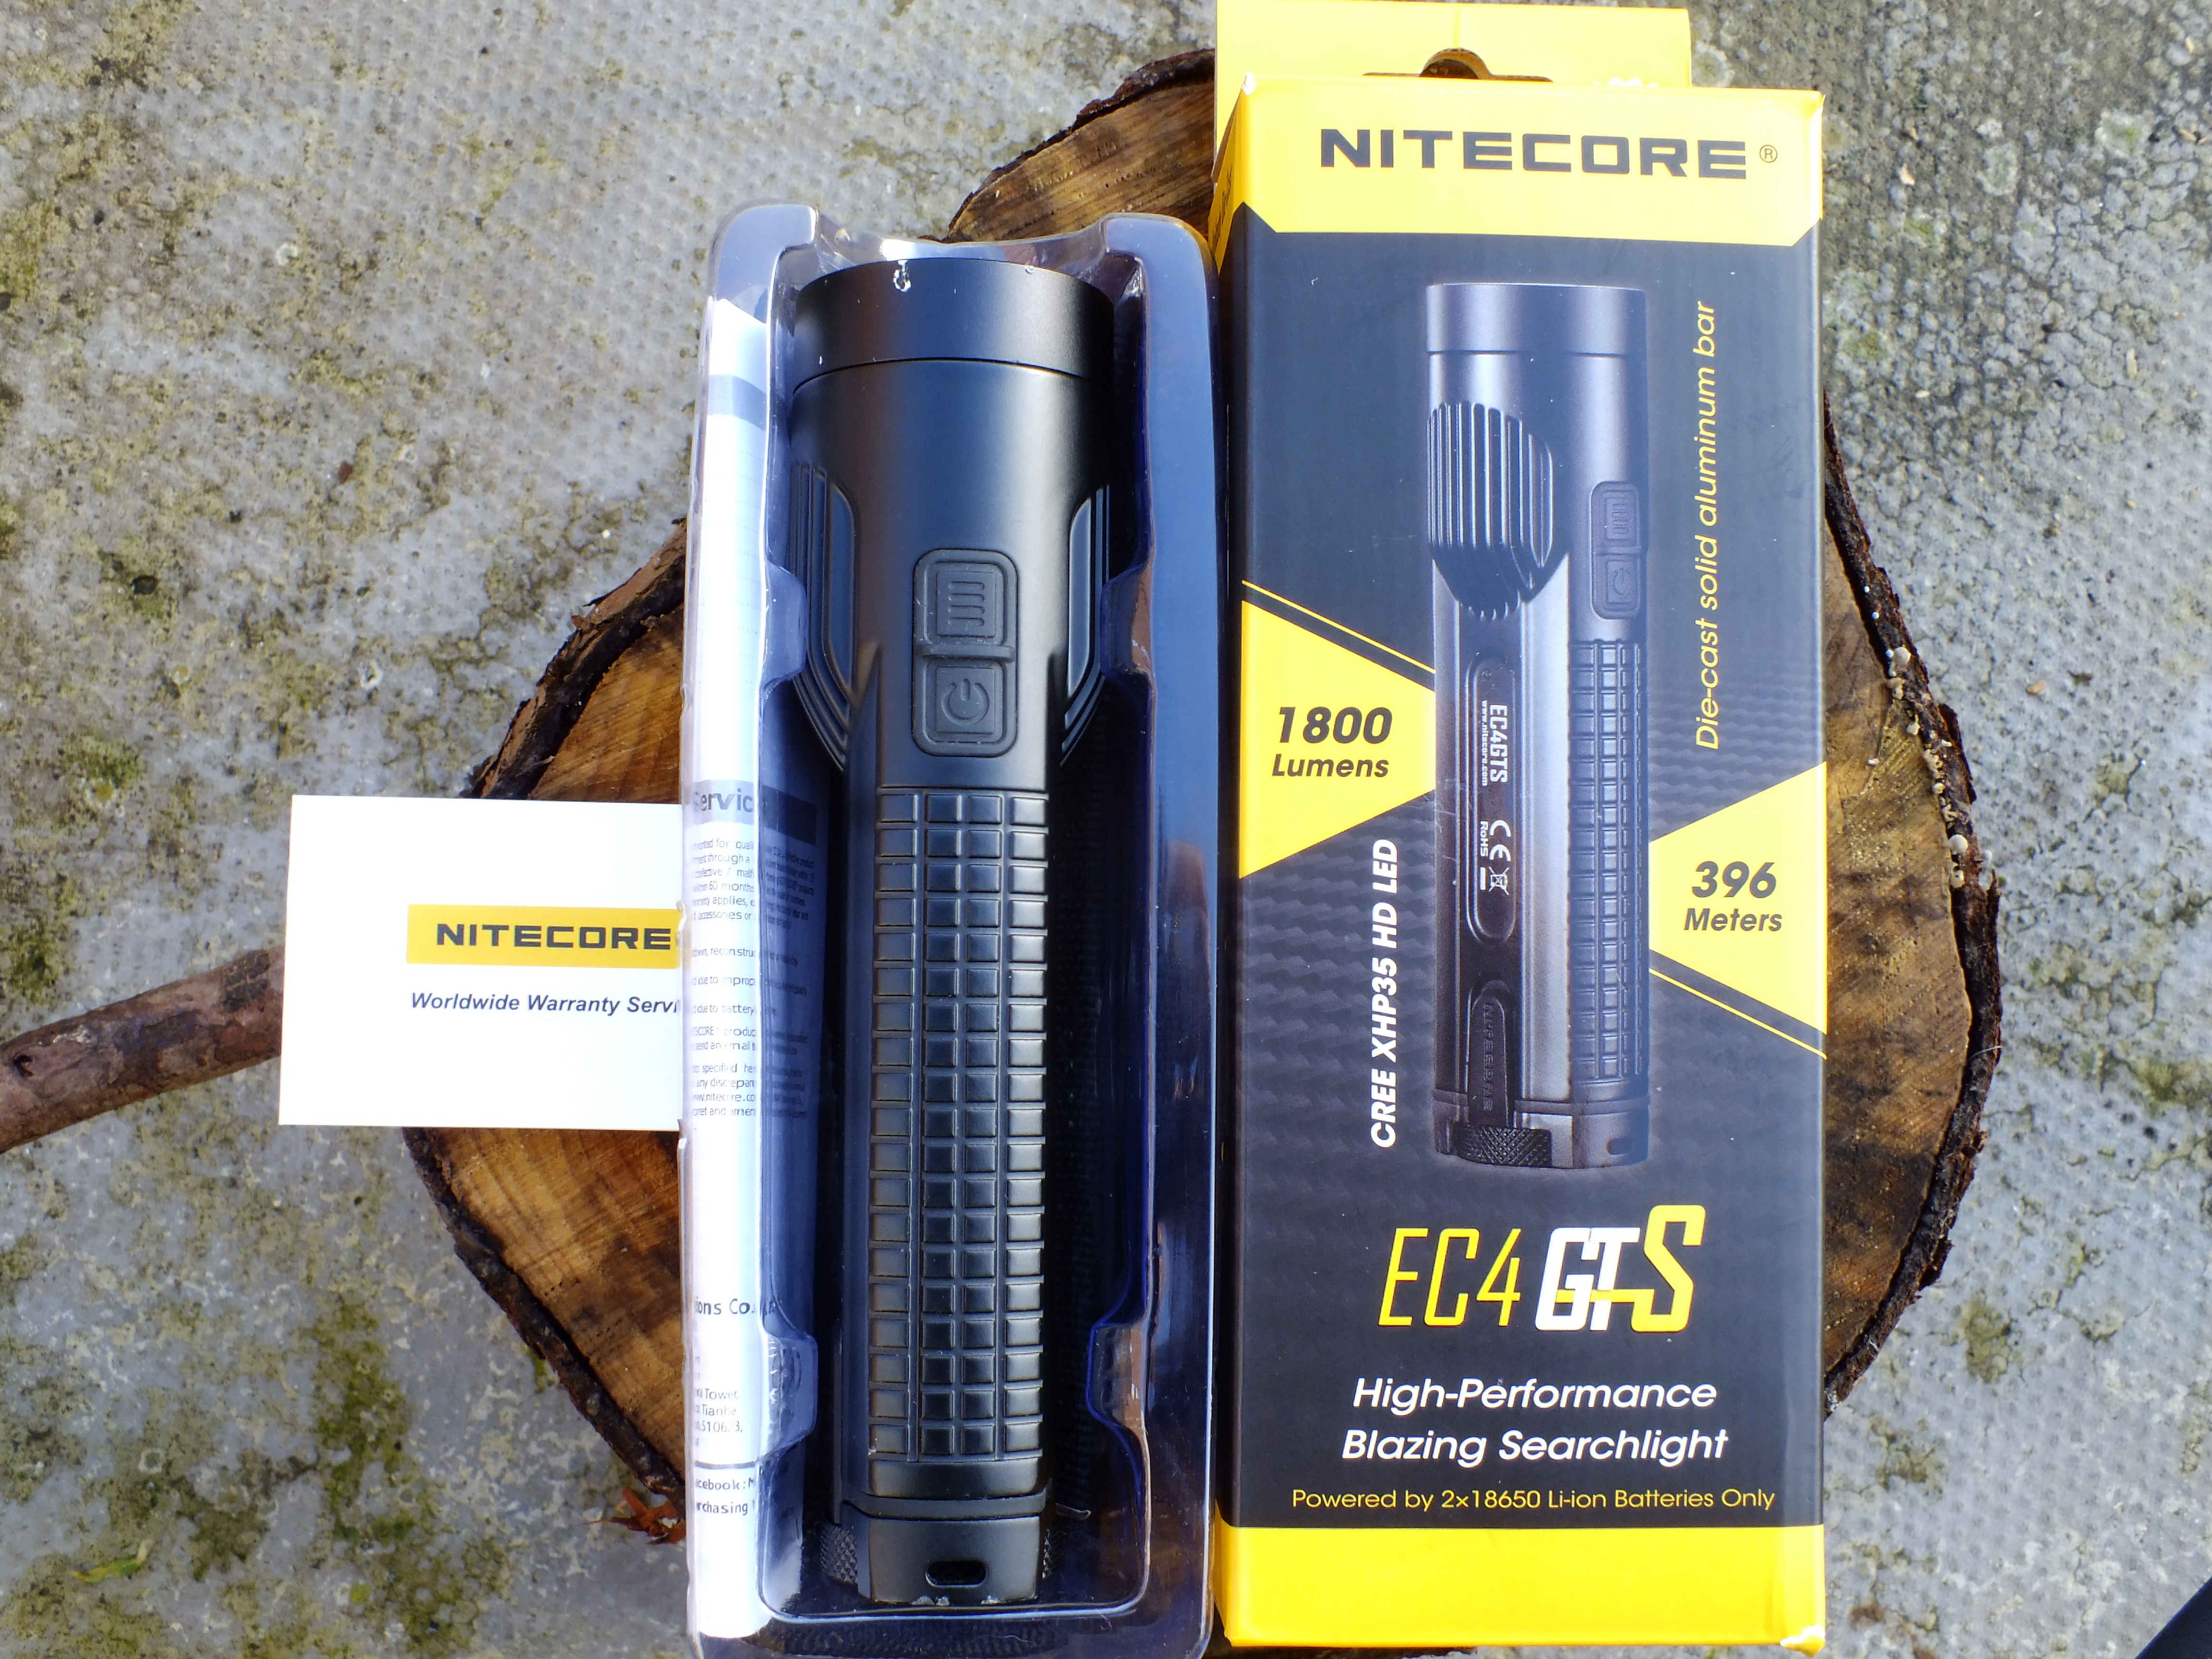 Nitecore EC4GTS Flashlight